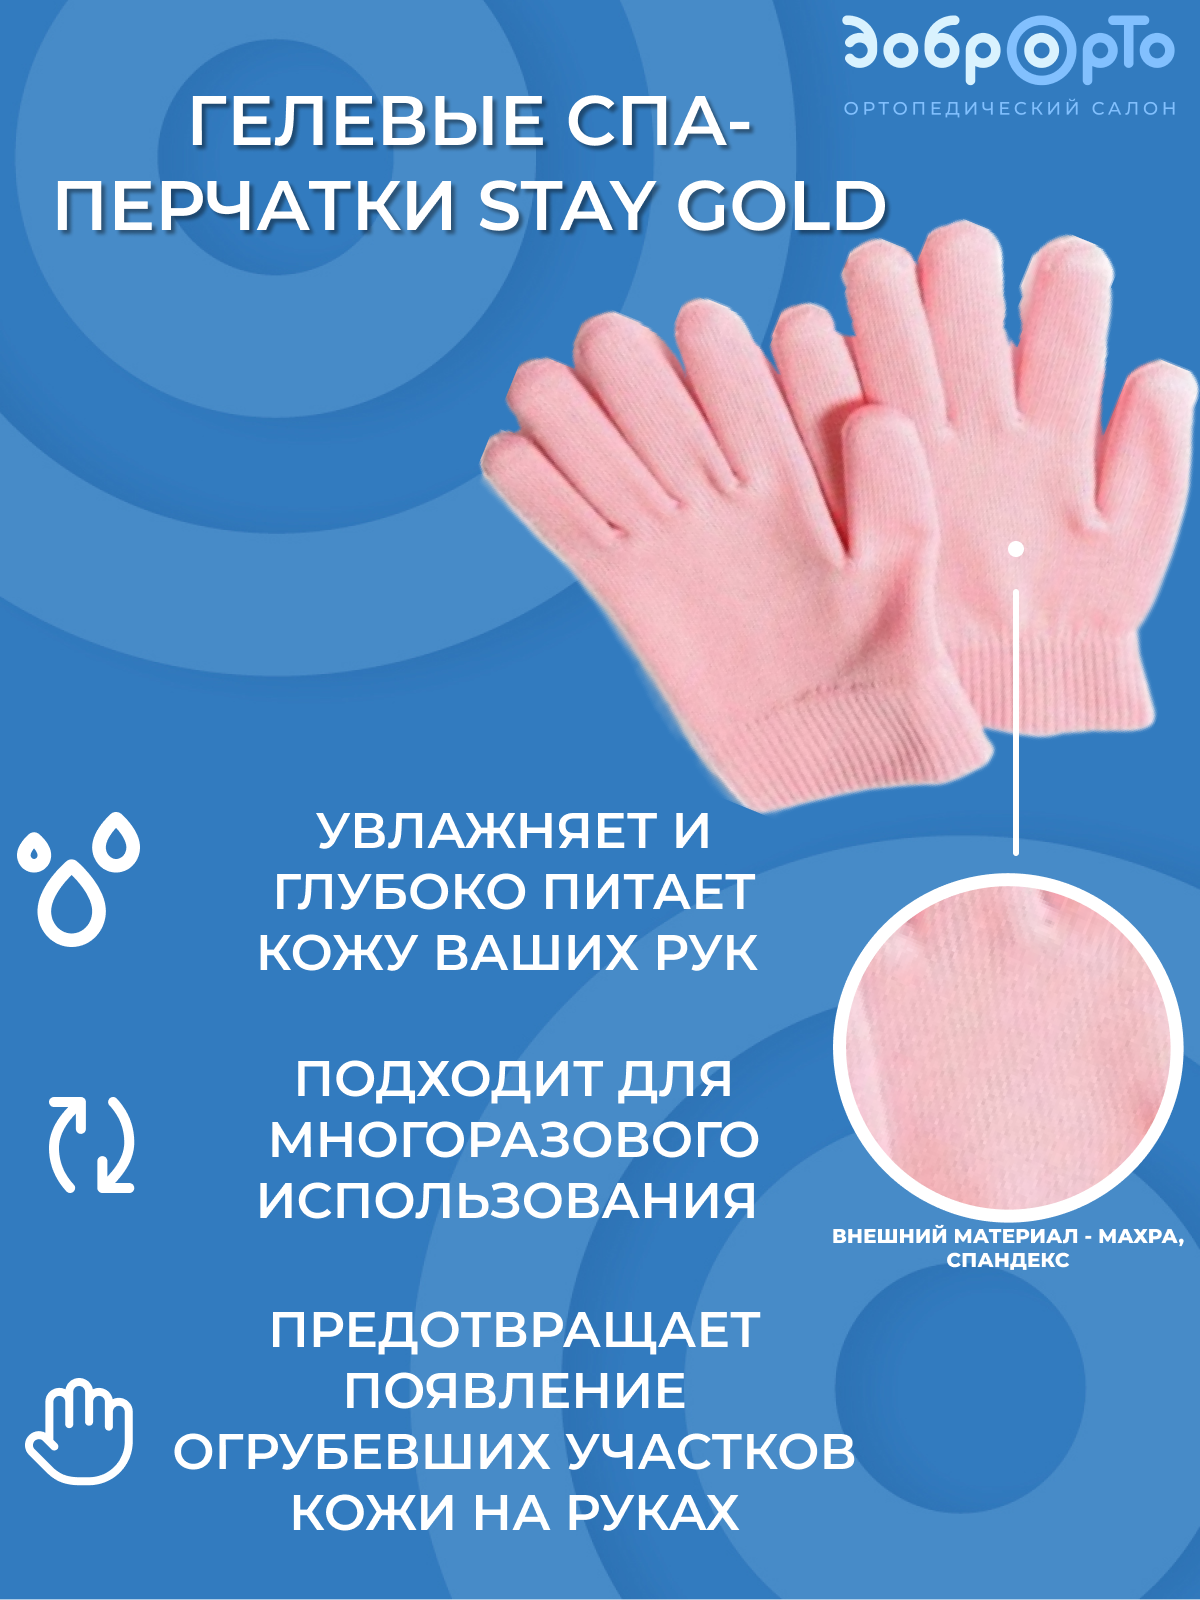 Гелевые спа- перчатки Stay Gold TV 506-V002